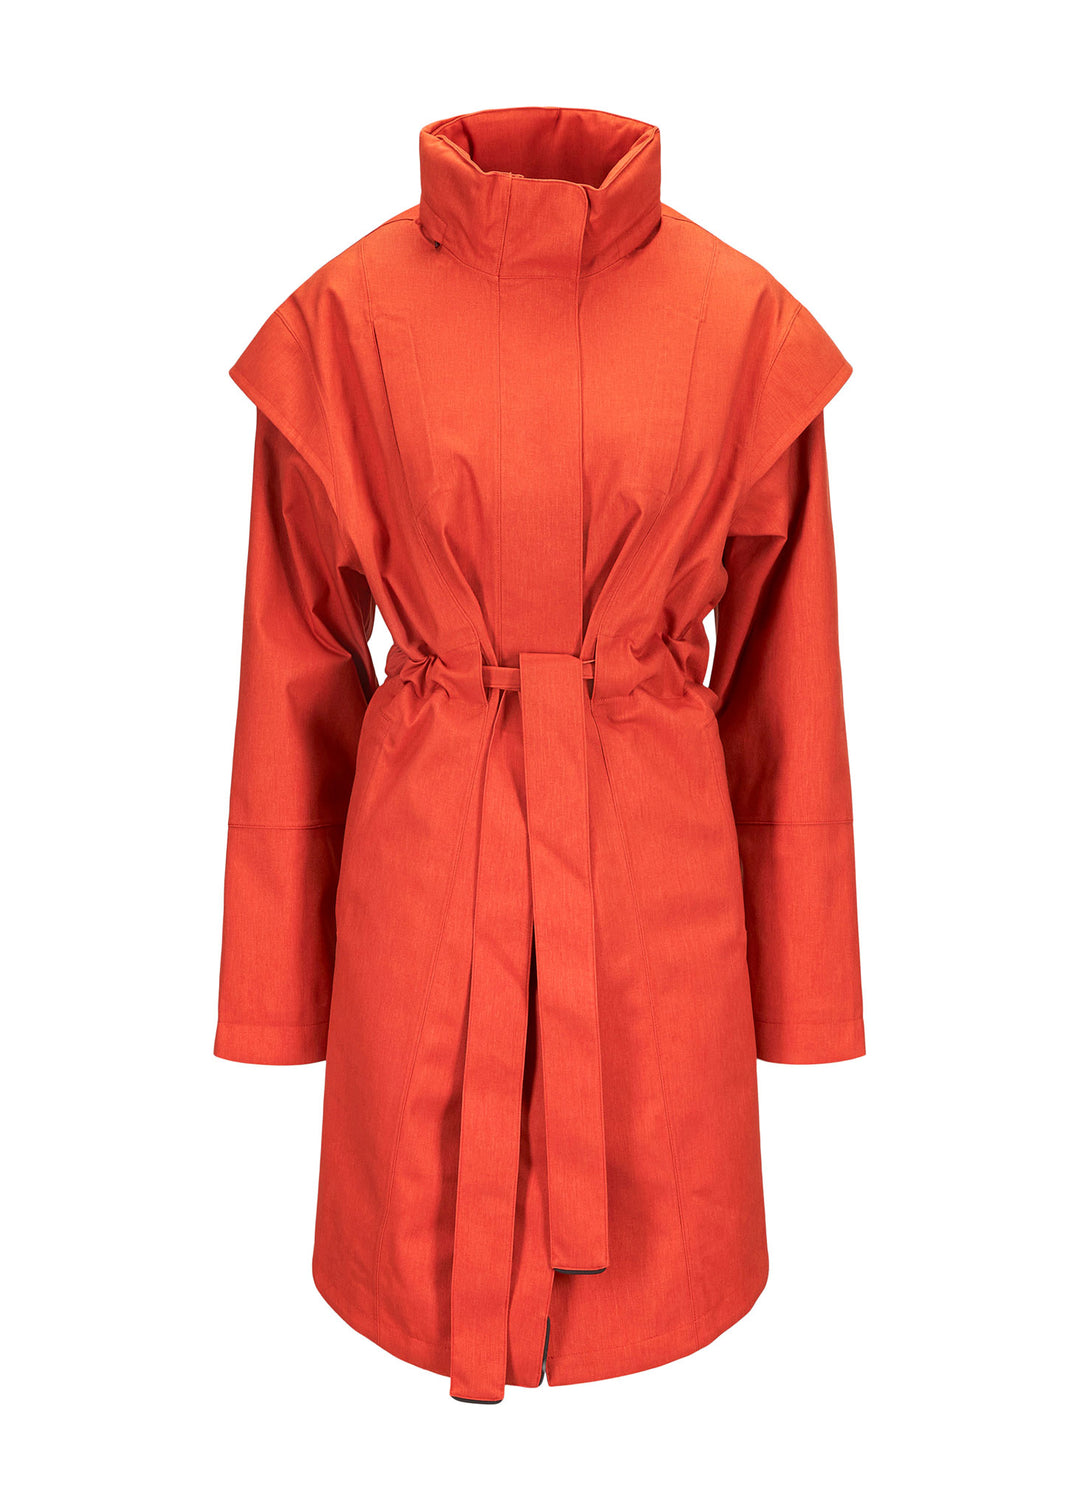 BRGN Monsun Coat Coats 275 Sunset Orange